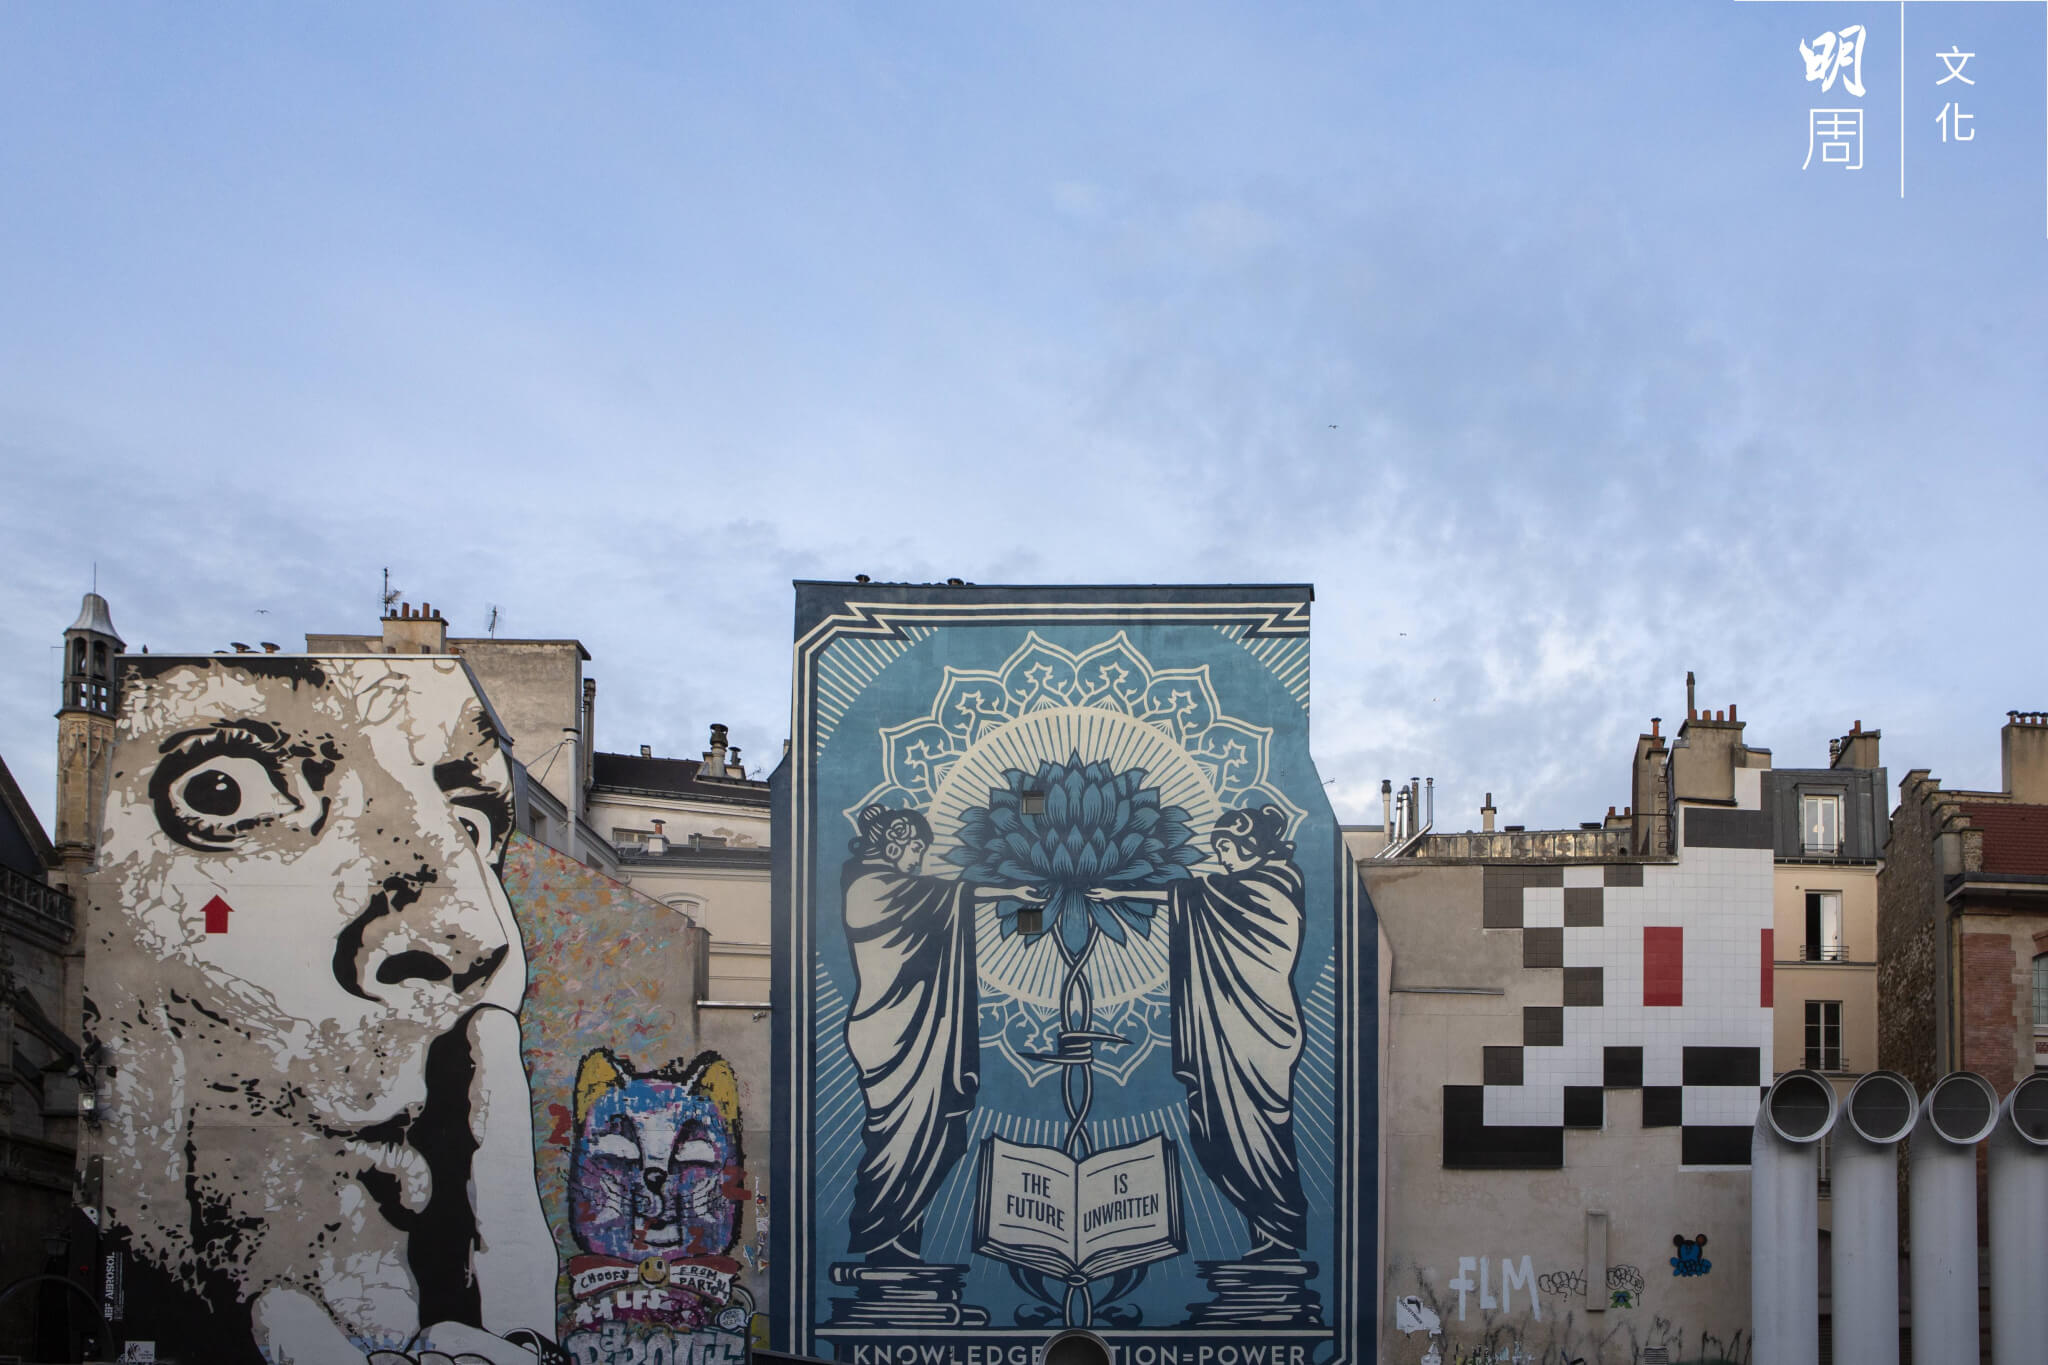 龐比度中心附近的建築物，不少牆身都可見街頭藝術。最左方一幅壁畫，是塗鴉藝術家Jef Aerosol二〇一二年的作品《Chuuuttt!!!》，描繪對象為超現實主義畫家達利。